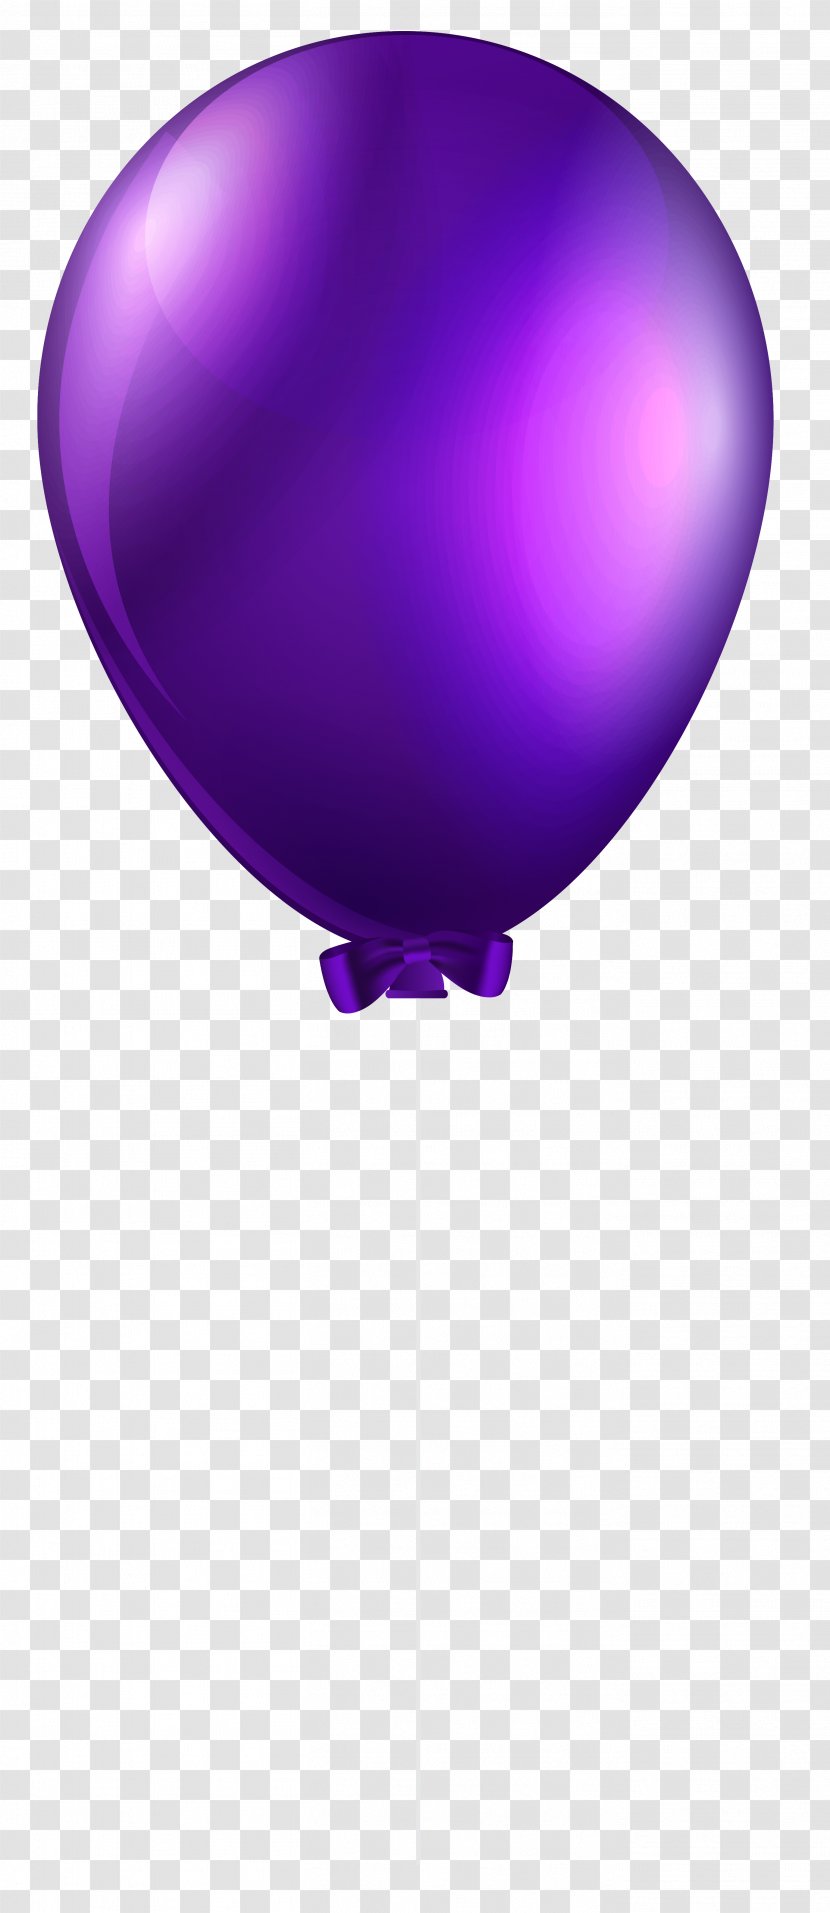 Balloon Purple Clip Art - Product Design - Transparent Image Transparent PNG